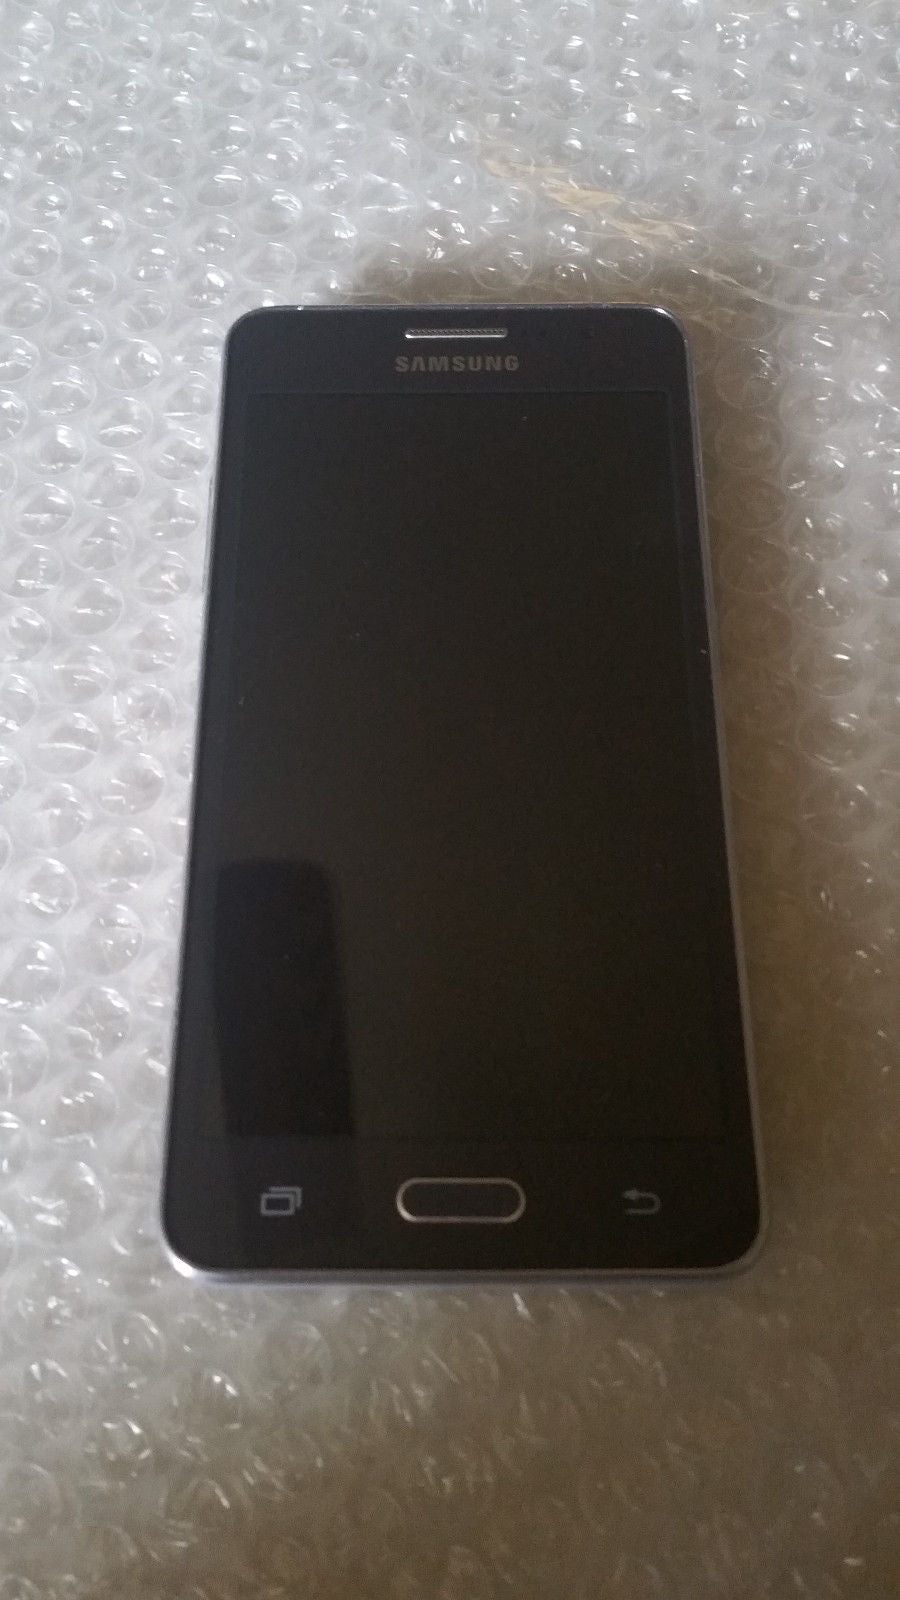 Samsung Galaxy Grand Prime SM-G530R4 8GB Grey (US Cellular) - TechStore USA LLC